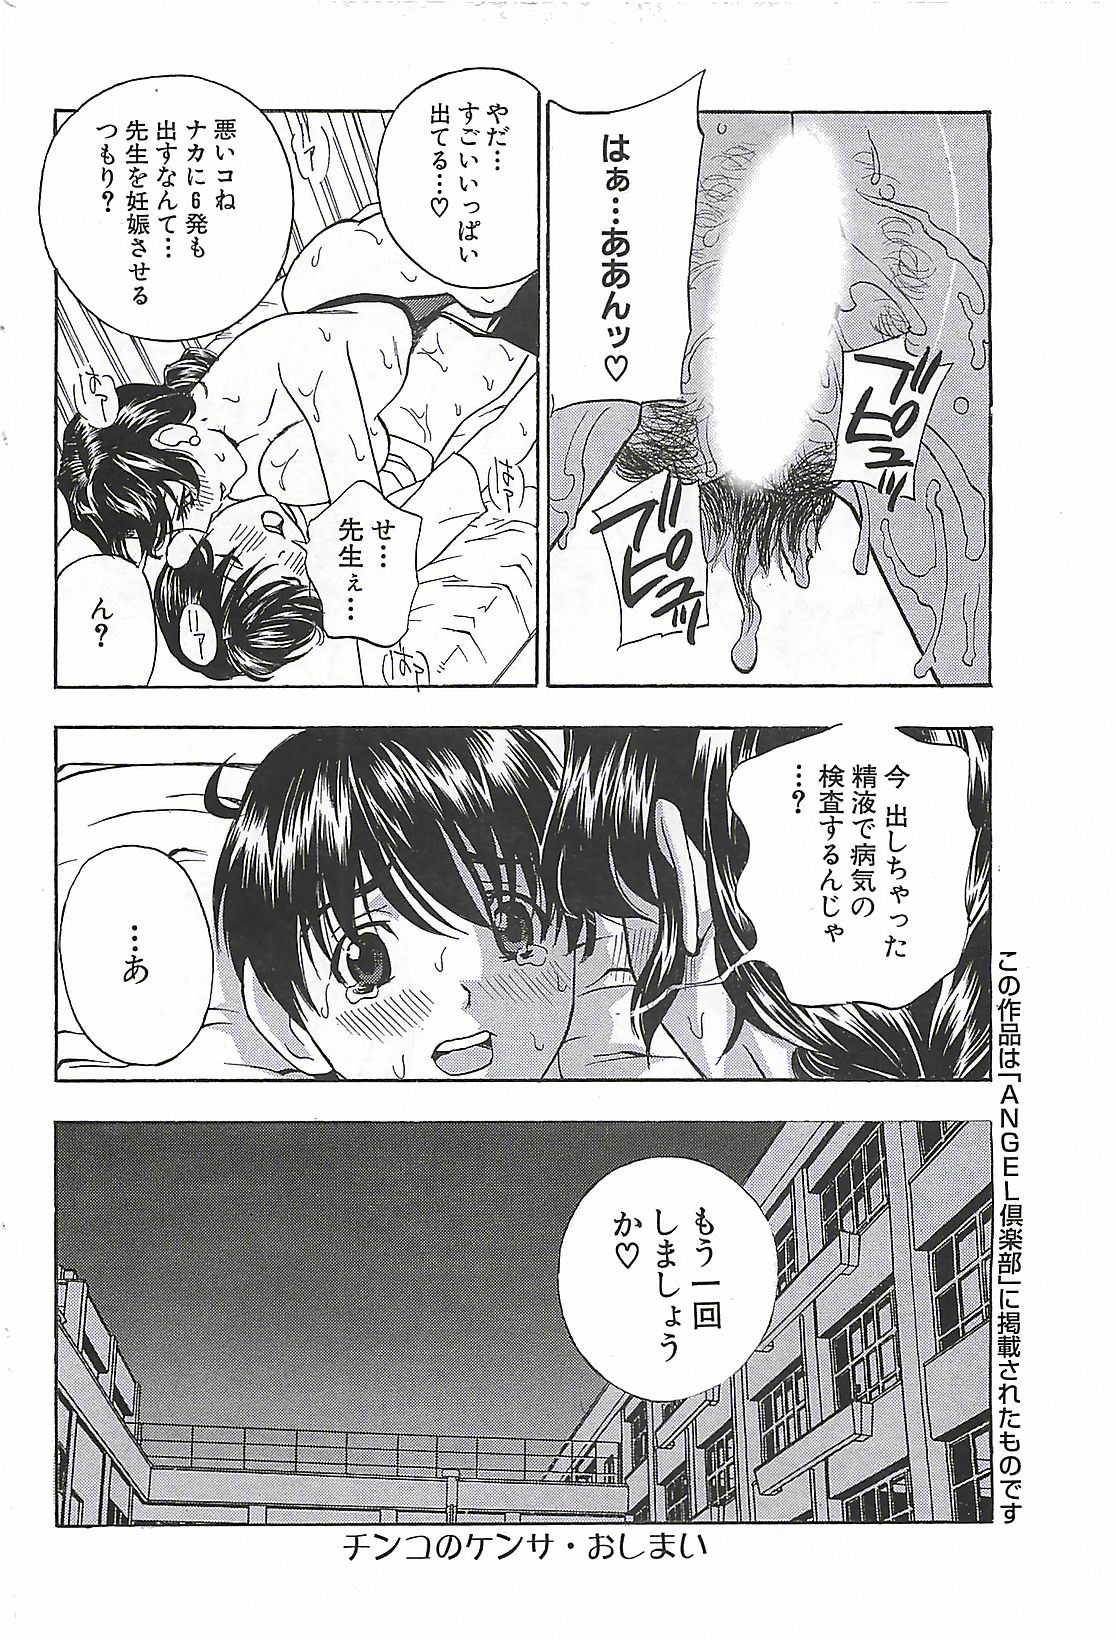 (雑誌) COMIC メンズヤング Special 丸ごと一冊巨乳女教師 !!! 2006年11月号